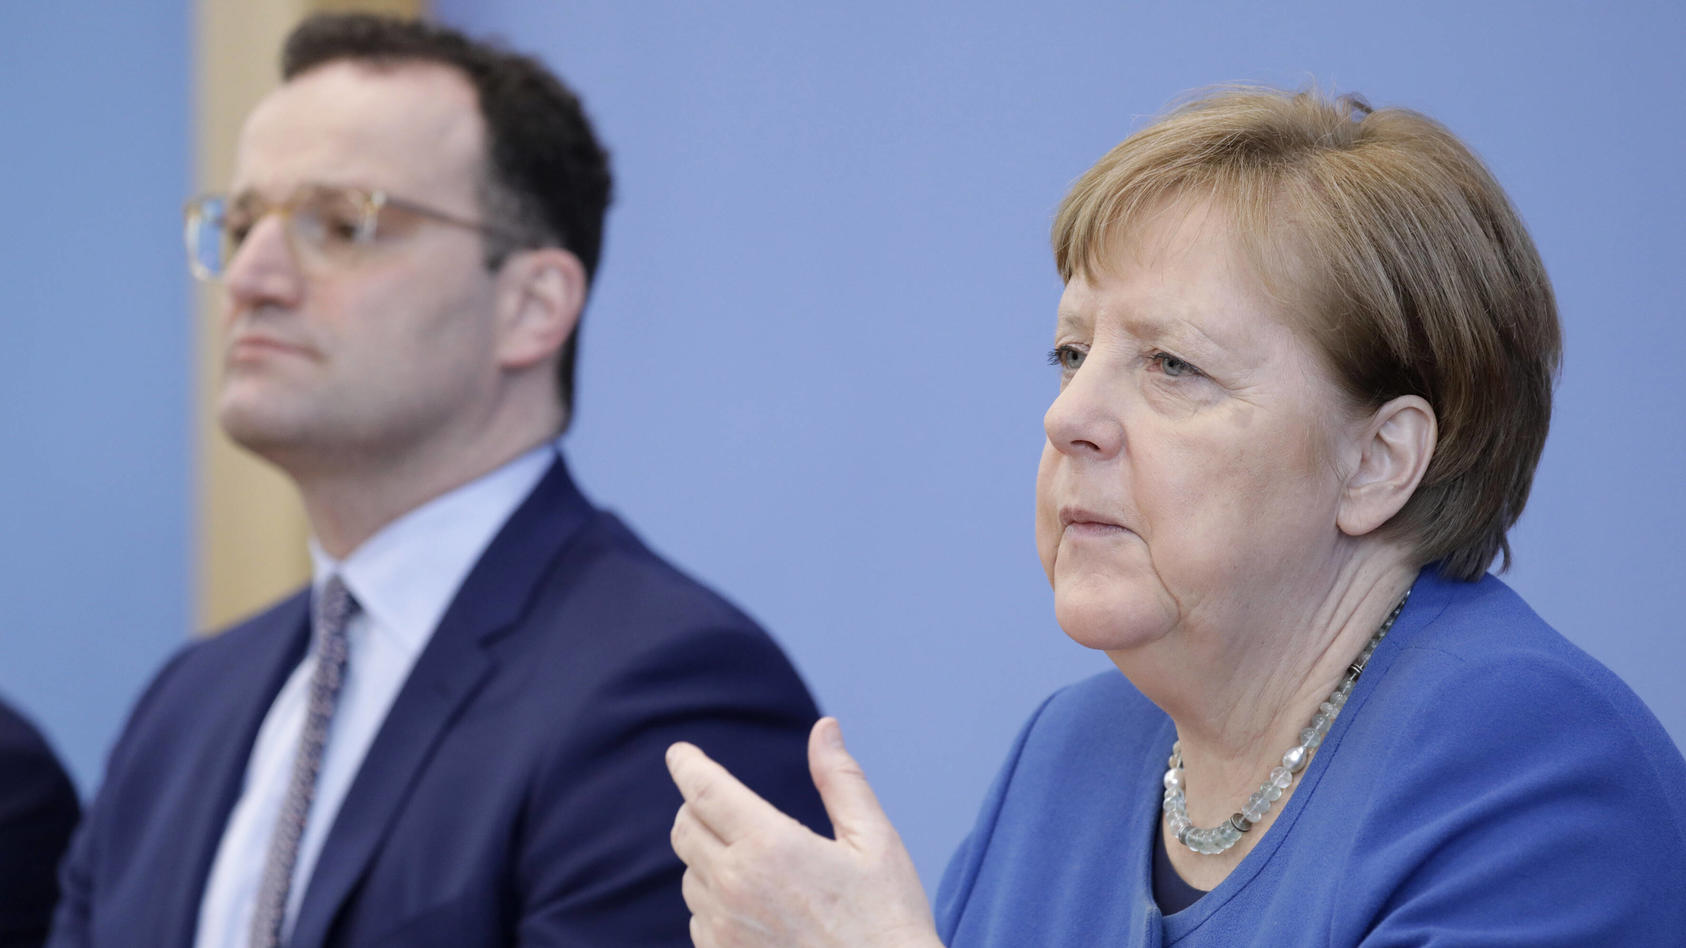 Jens Spahn, Bundesminister für Gesundheit und Angela Merkel nannten falsche Infektionszahlen.